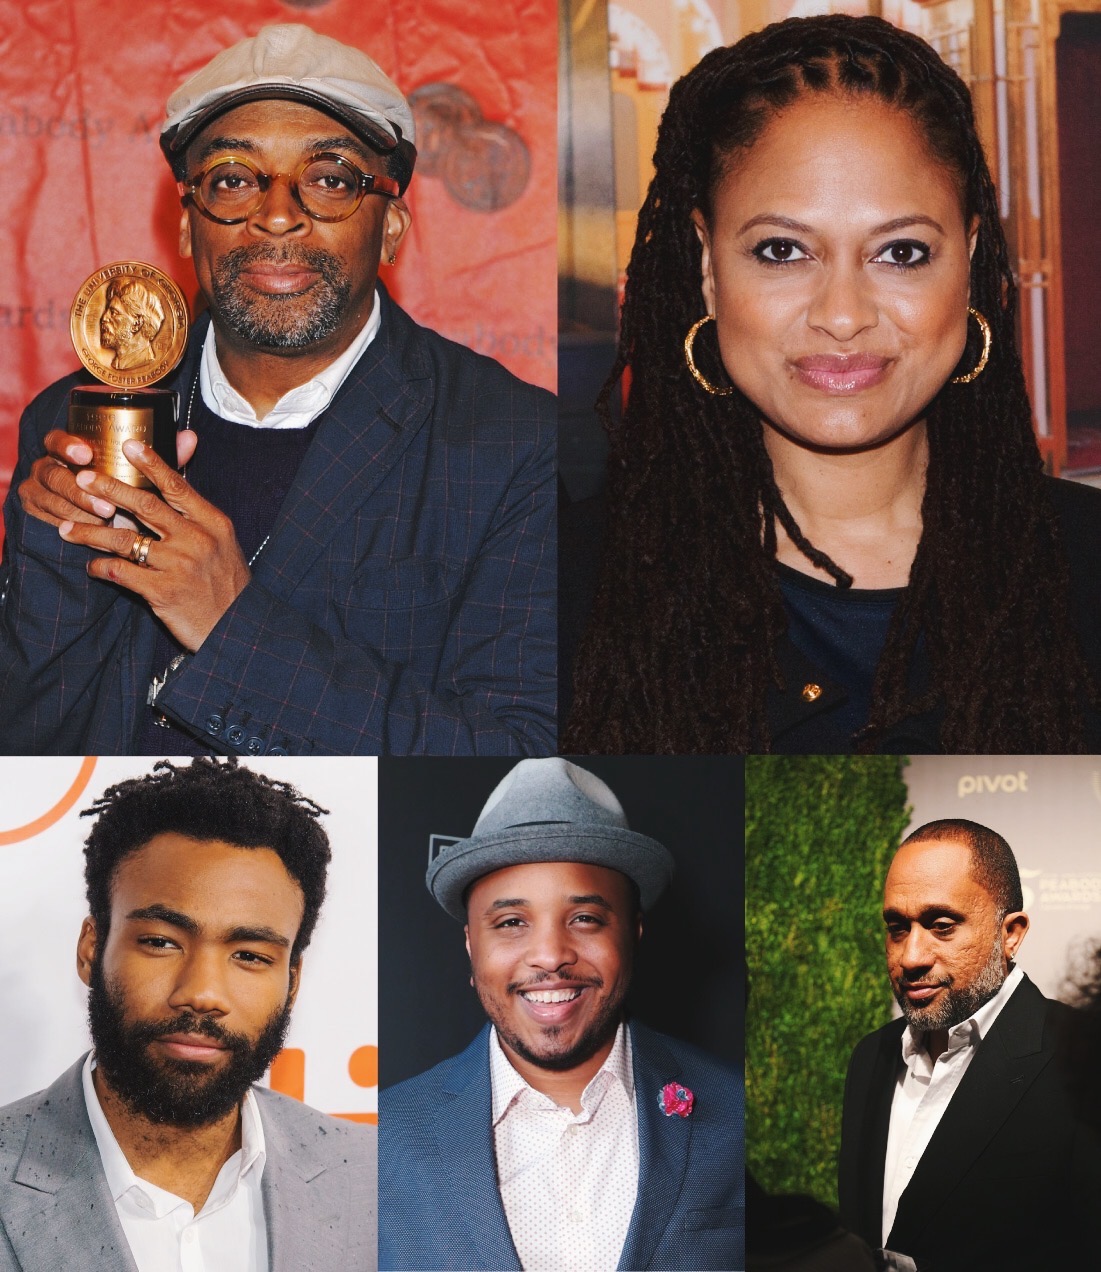 La brutalidad policial y el racismo institucionalizado contados por 5 creadores afroamericanos 5